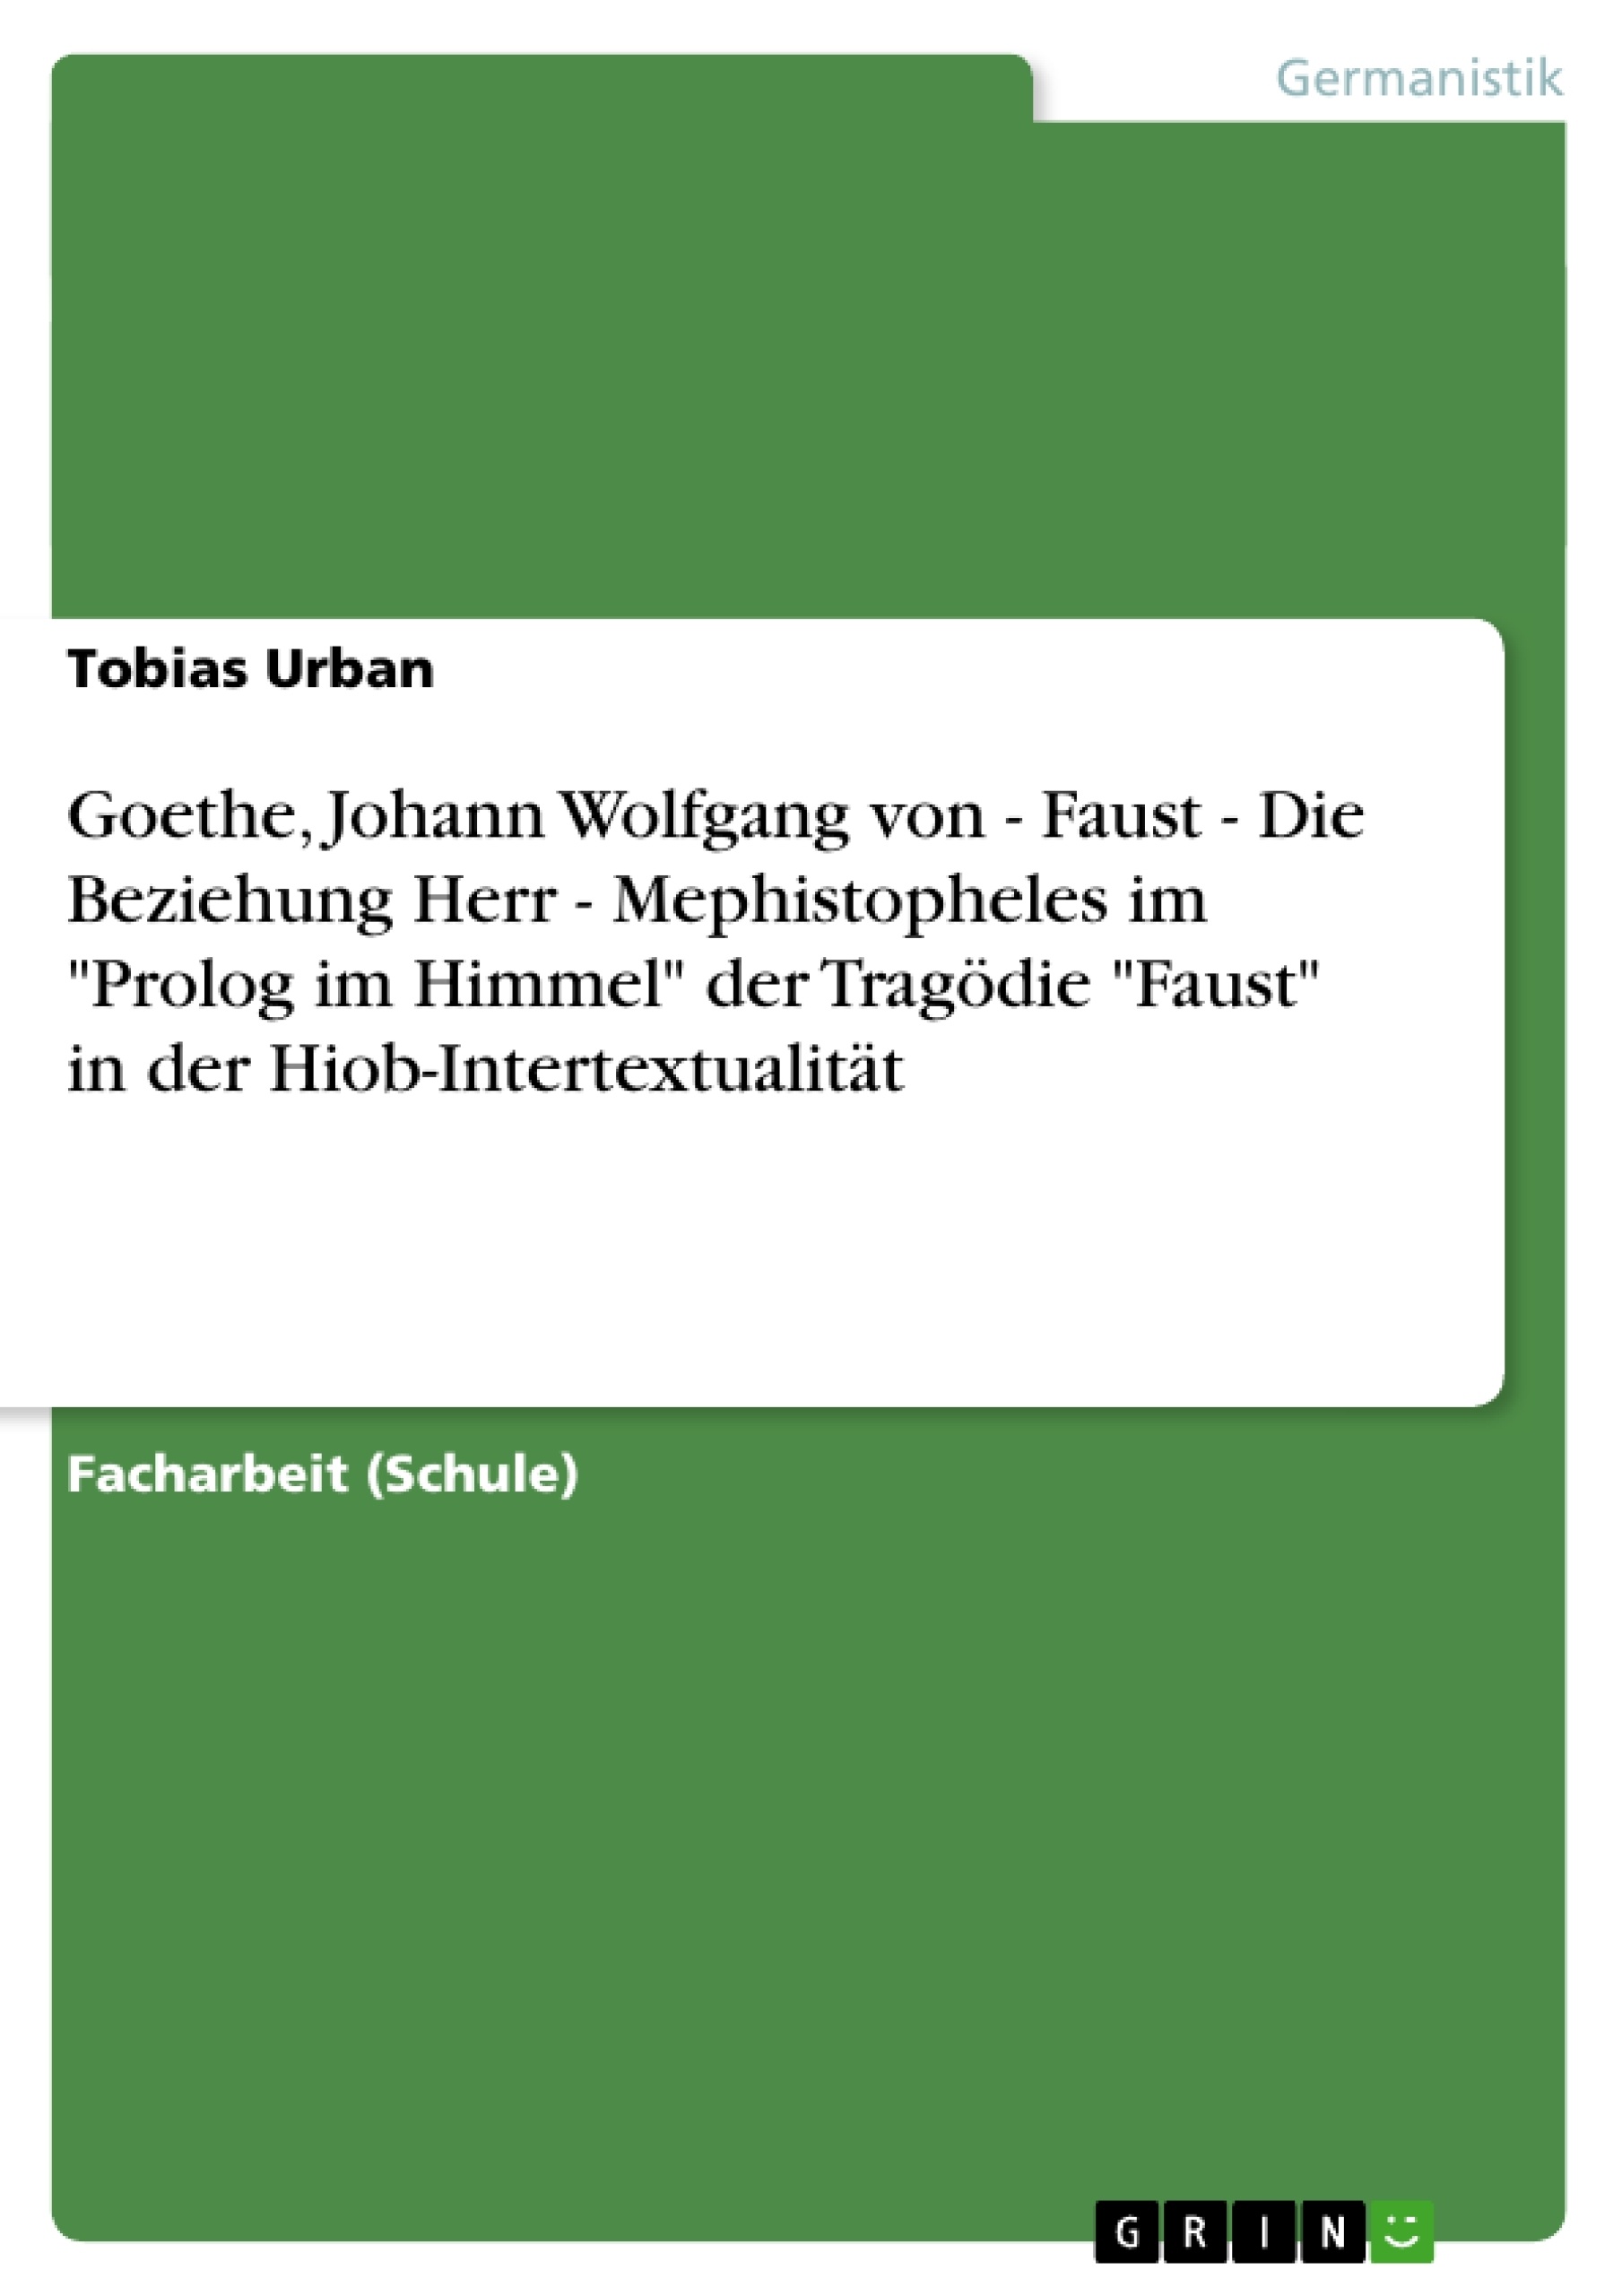 Titel: Goethe, Johann Wolfgang von - Faust - Die Beziehung Herr - Mephistopheles im "Prolog im Himmel" der Tragödie "Faust" in der Hiob-Intertextualität